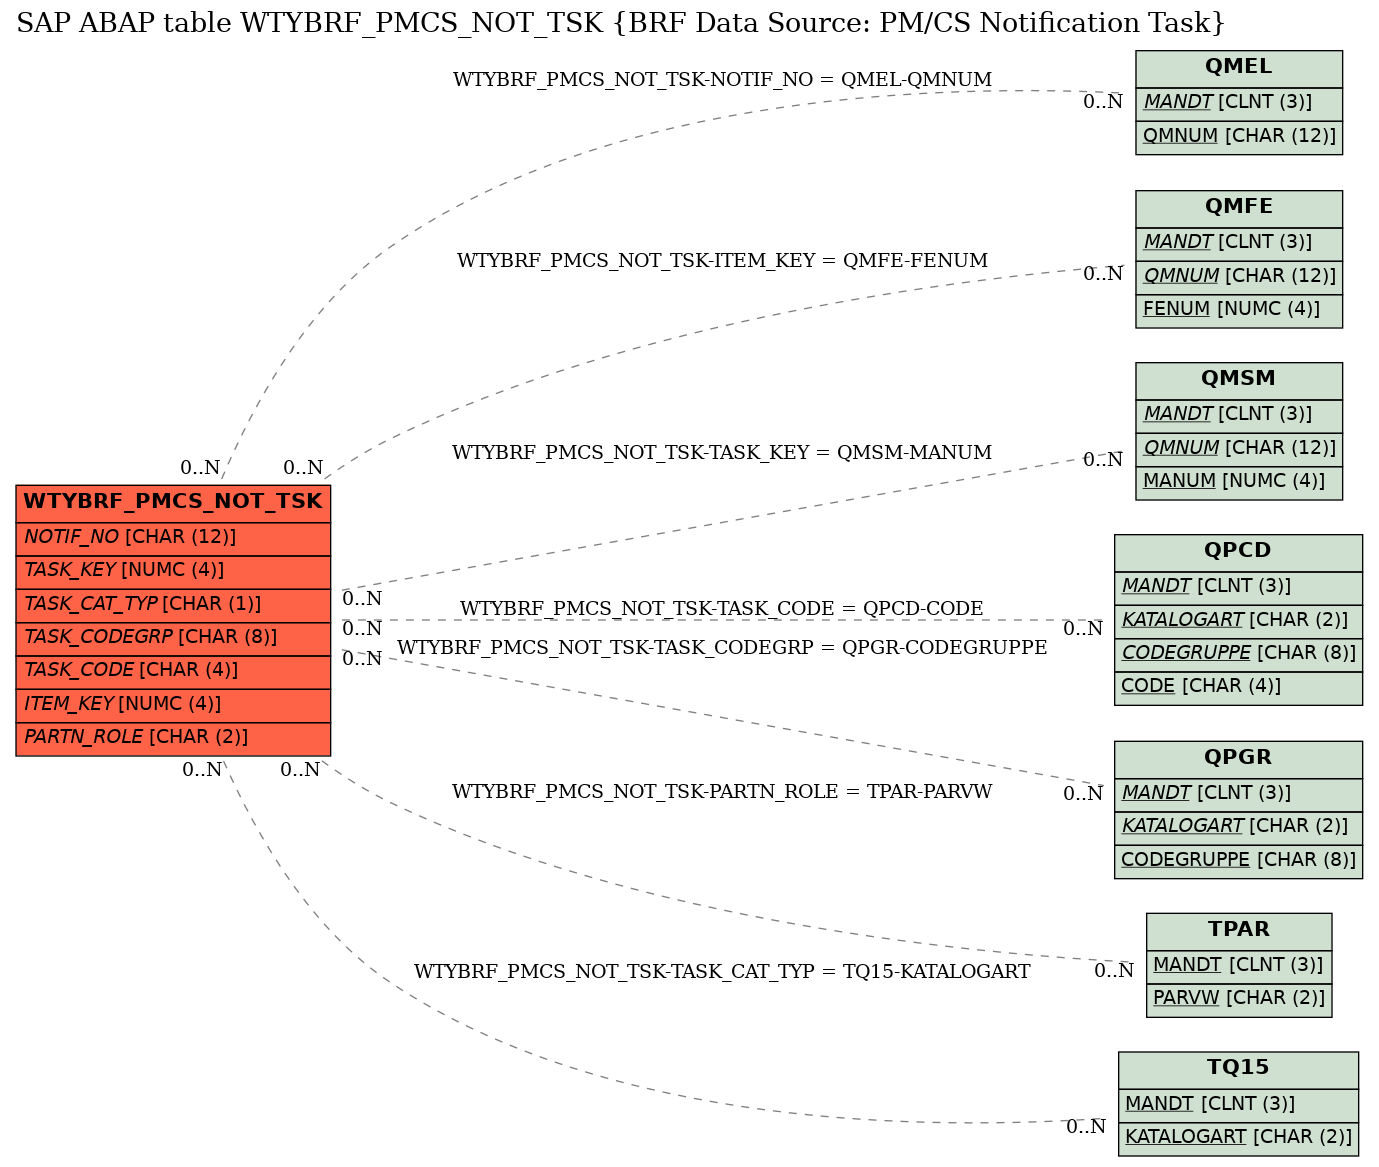 E-R Diagram for table WTYBRF_PMCS_NOT_TSK (BRF Data Source: PM/CS Notification Task)